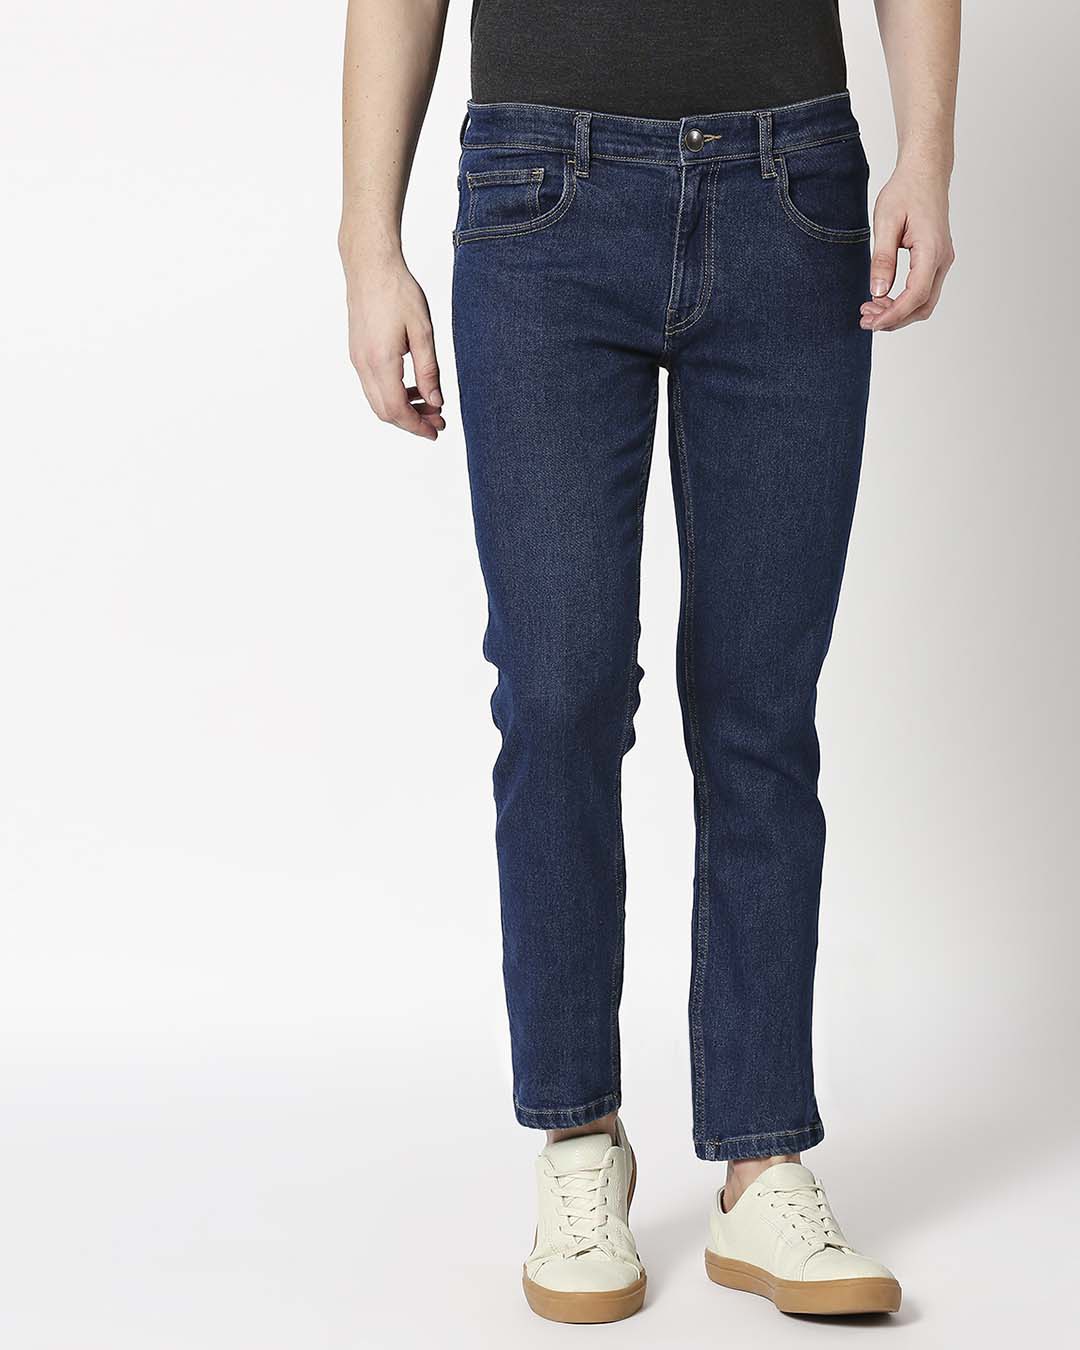 Shop Indigo Denim Pants Mid Rise Stretchable Men's Jeans-Back